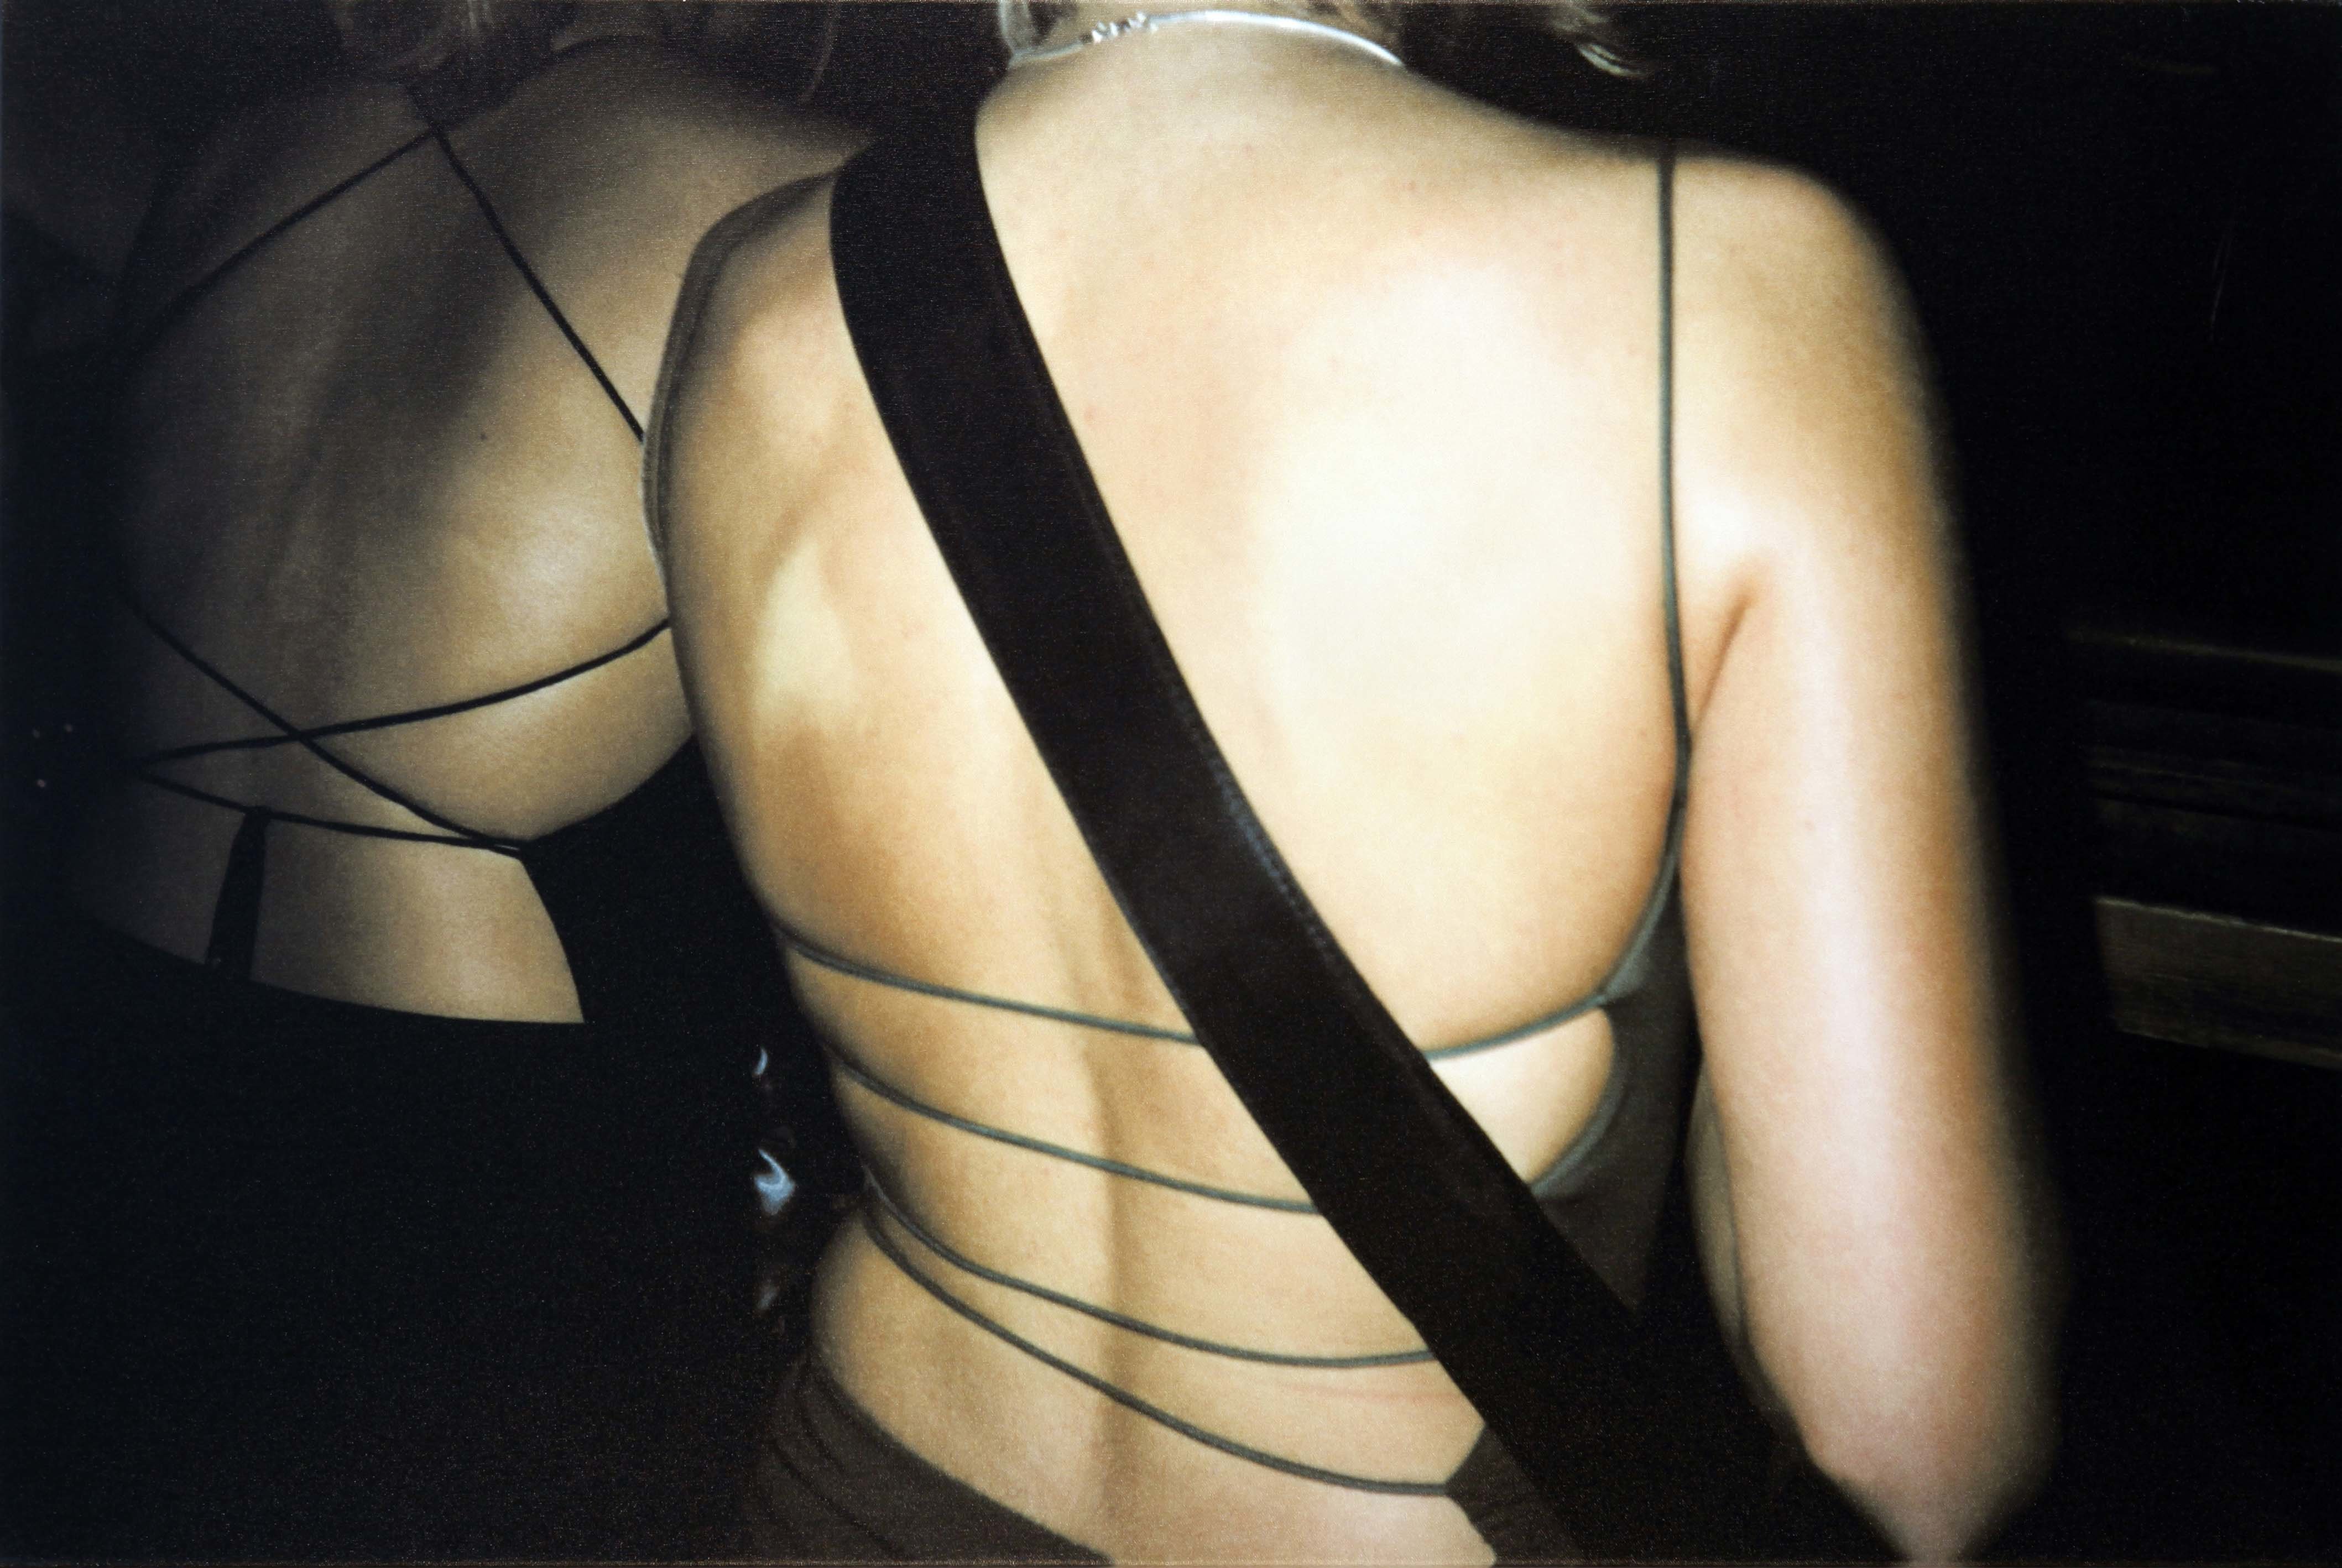 071200-0012 Rücken, aus der Serie "Nightlife",Digitaldruck auf Leinwand; Leihgabe des Förderkreises der Kunsthalle Mannheim e.V. seit 2003; © VG Bild-Kunst, Bonn 2013